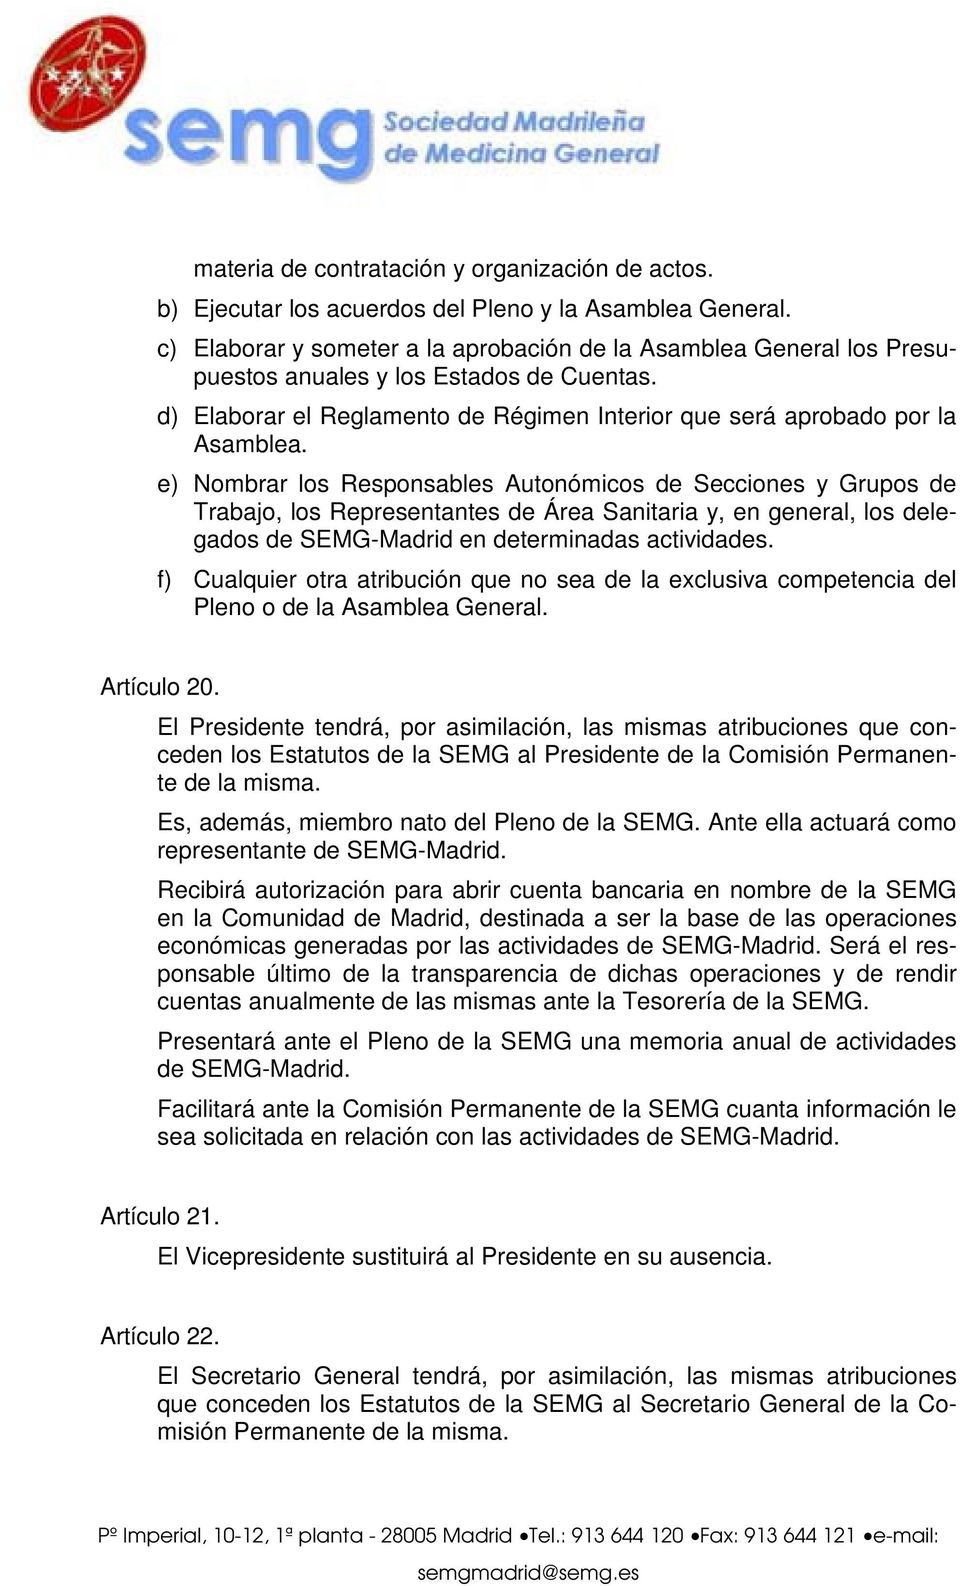 e) Nombrar los Responsables Autonómicos de Secciones y Grupos de Trabajo, los Representantes de Área Sanitaria y, en general, los delegados de SEMG-Madrid en determinadas actividades.